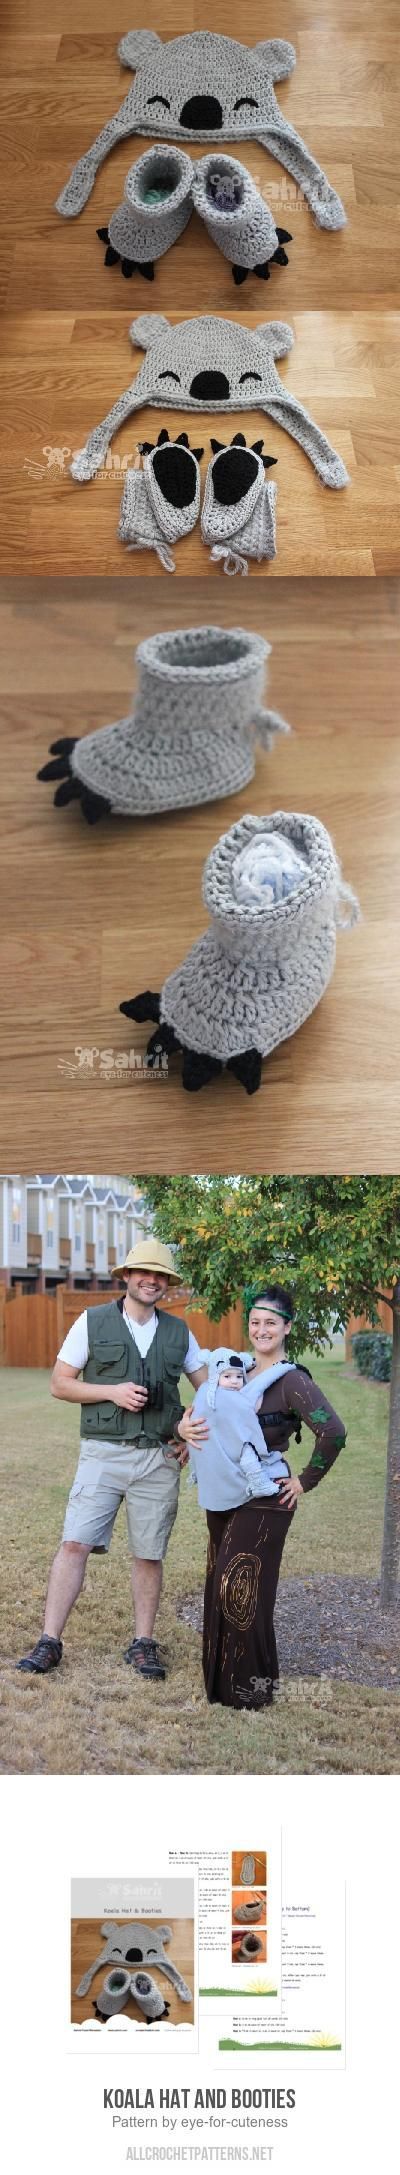 Koala-Hat-and-Booties-crochet-pattern.jpg